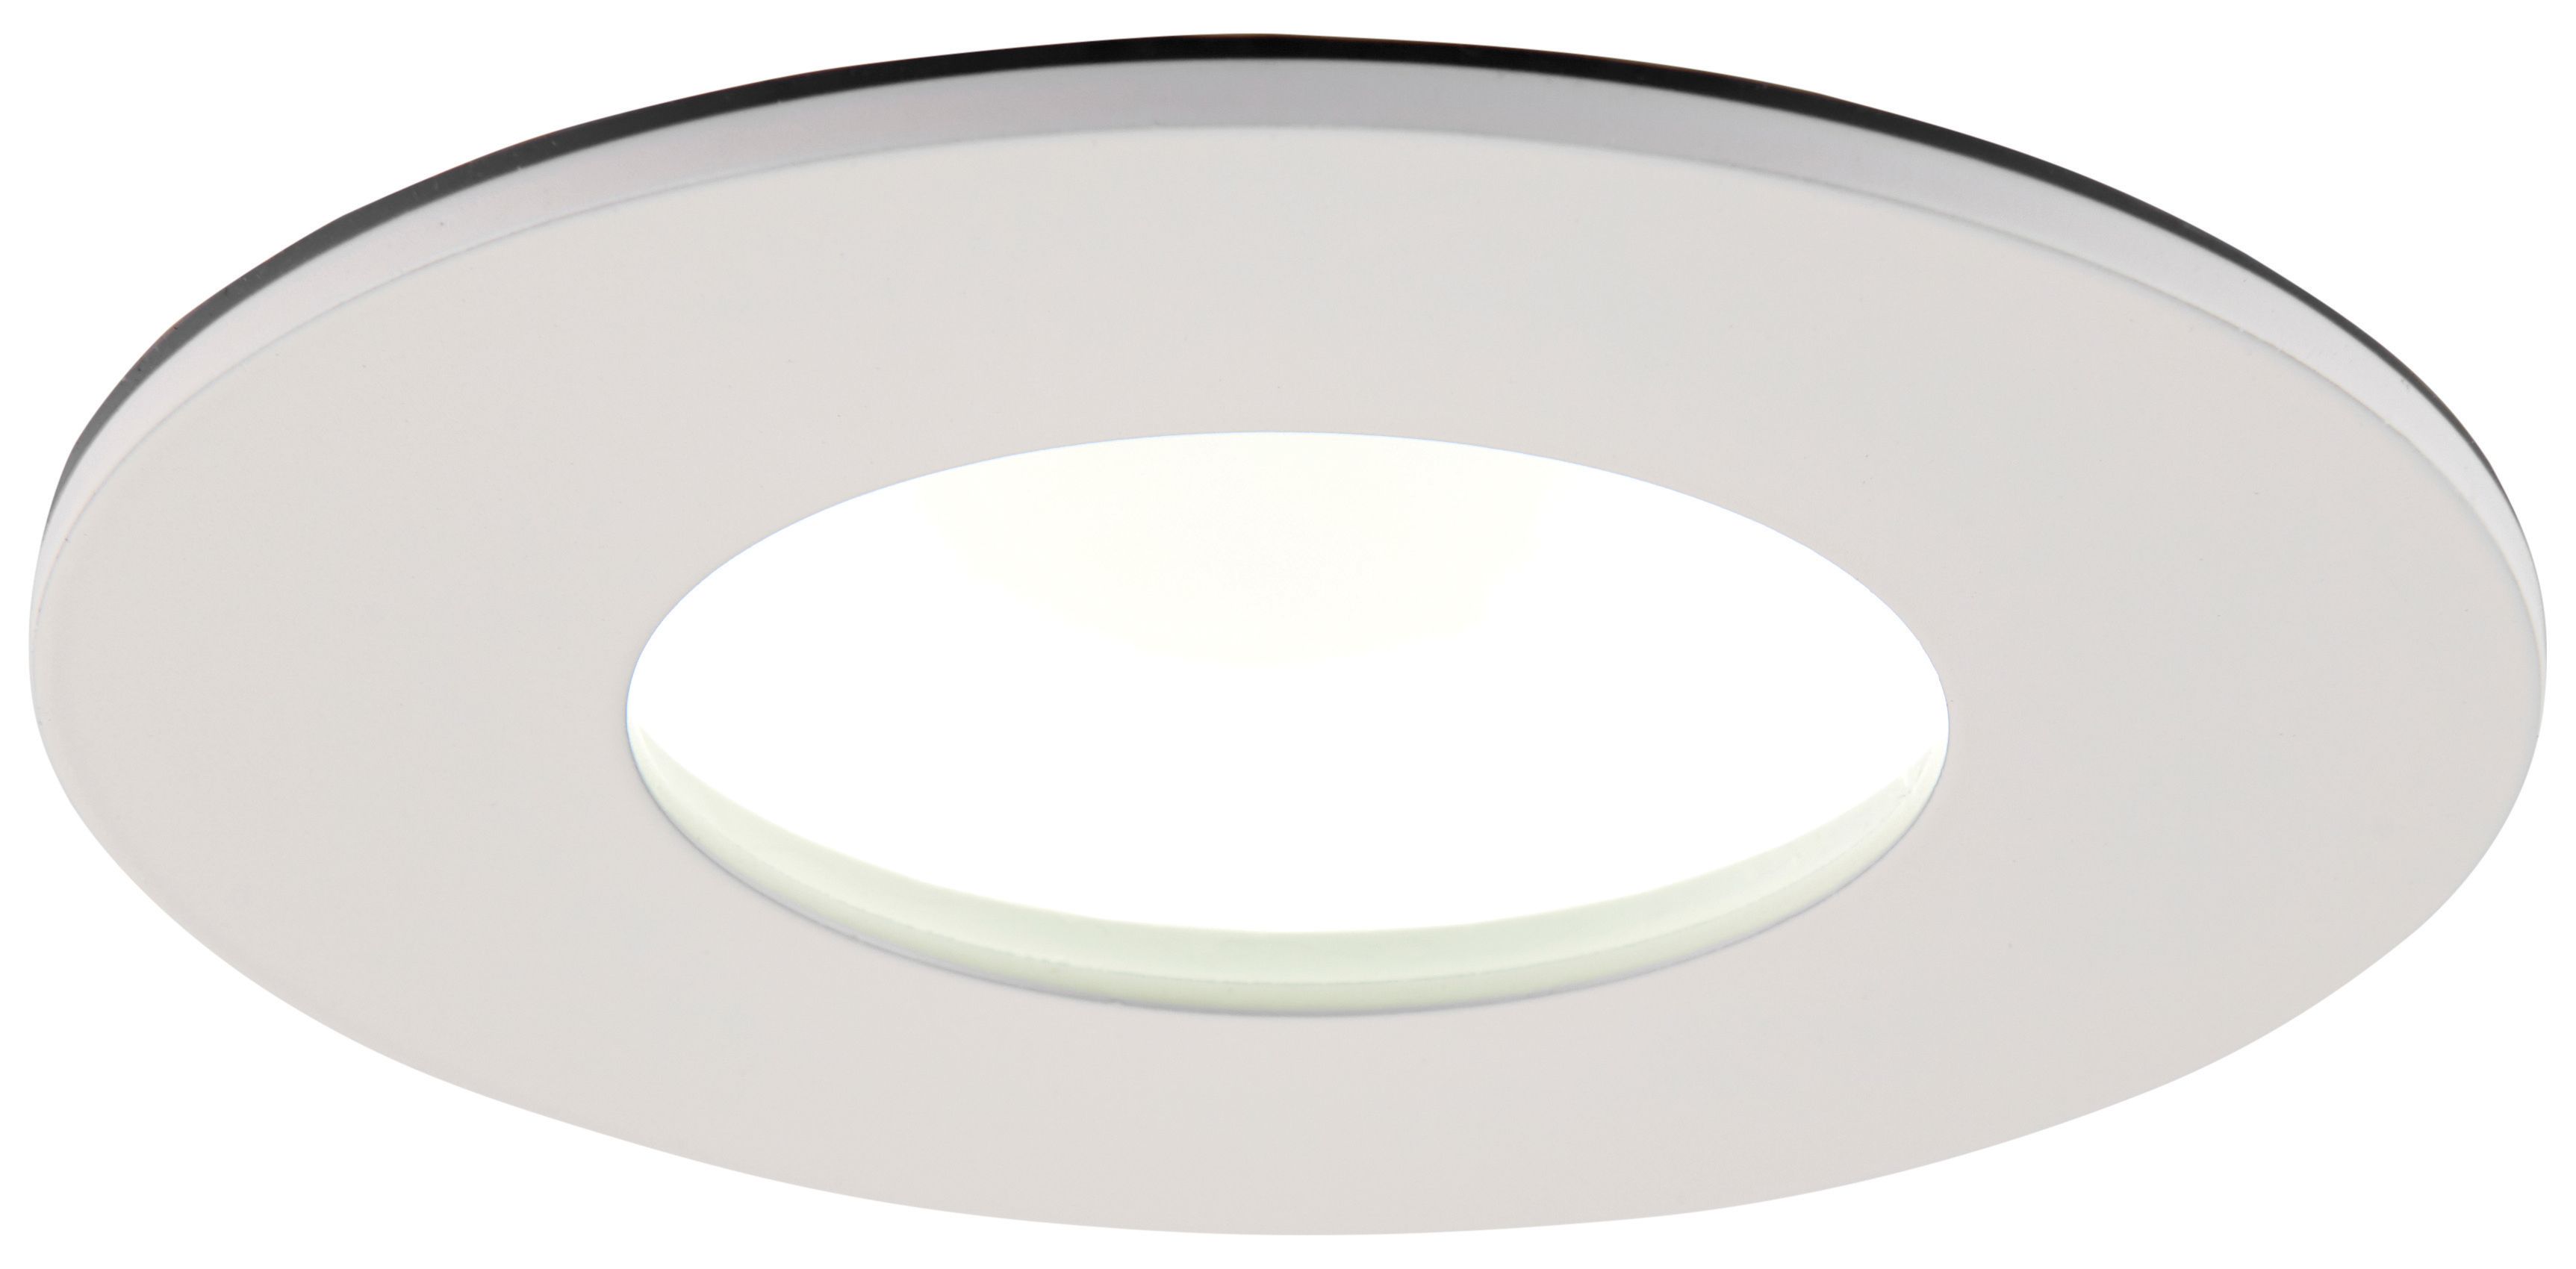 Saxby Orbital Plus Anti-Glare IP65 Matt White Cool White Downlight